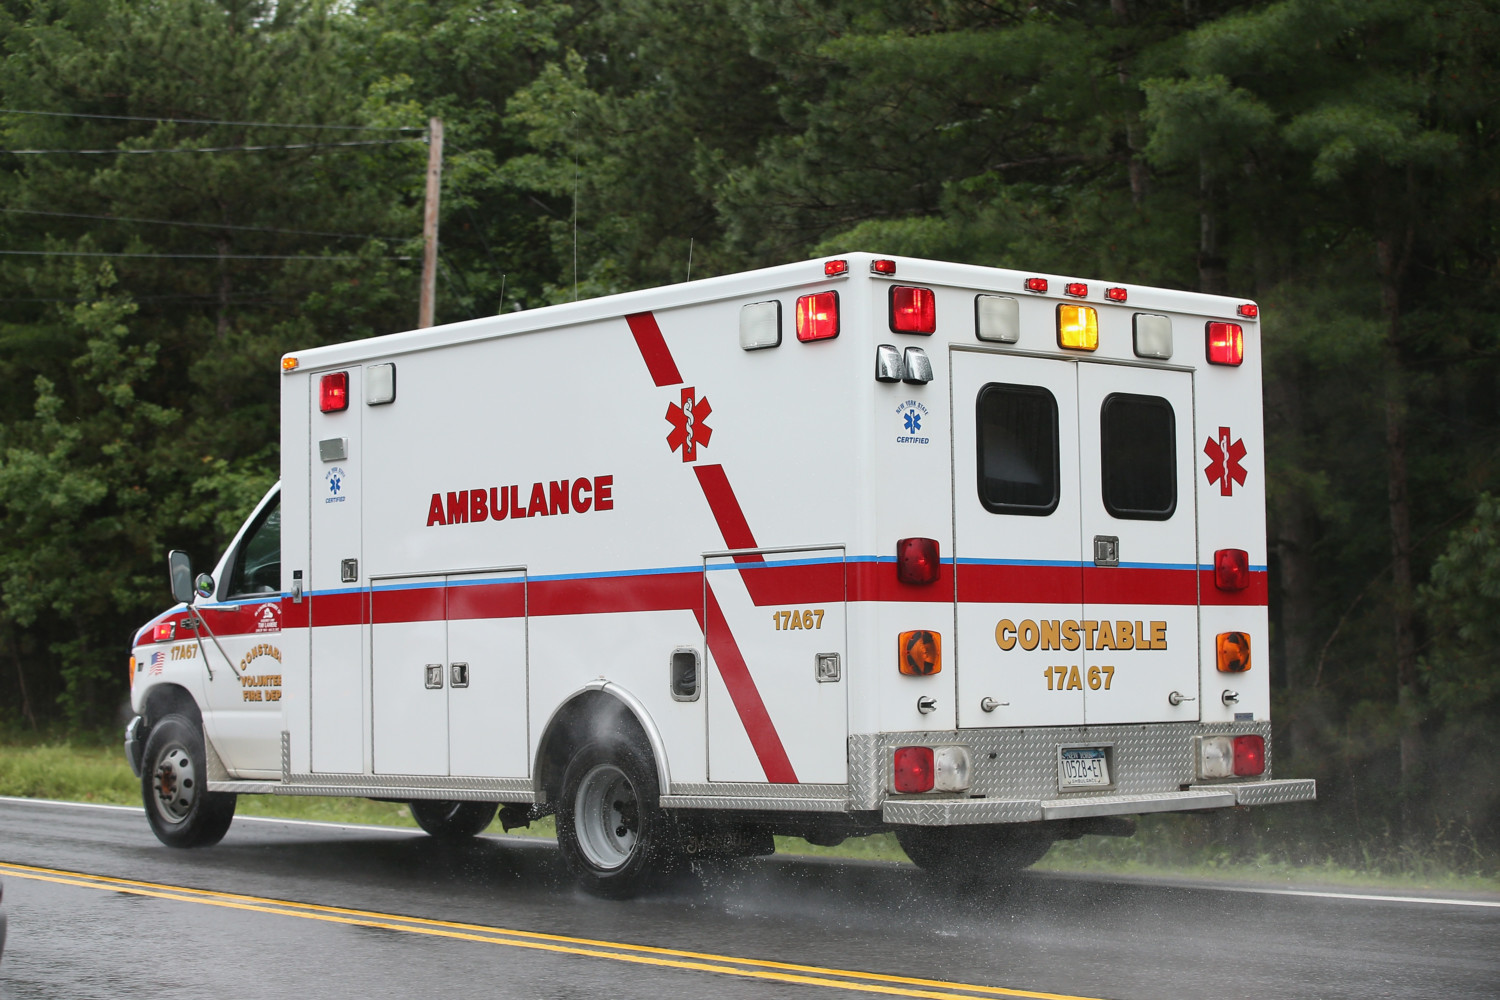 ambulance photo